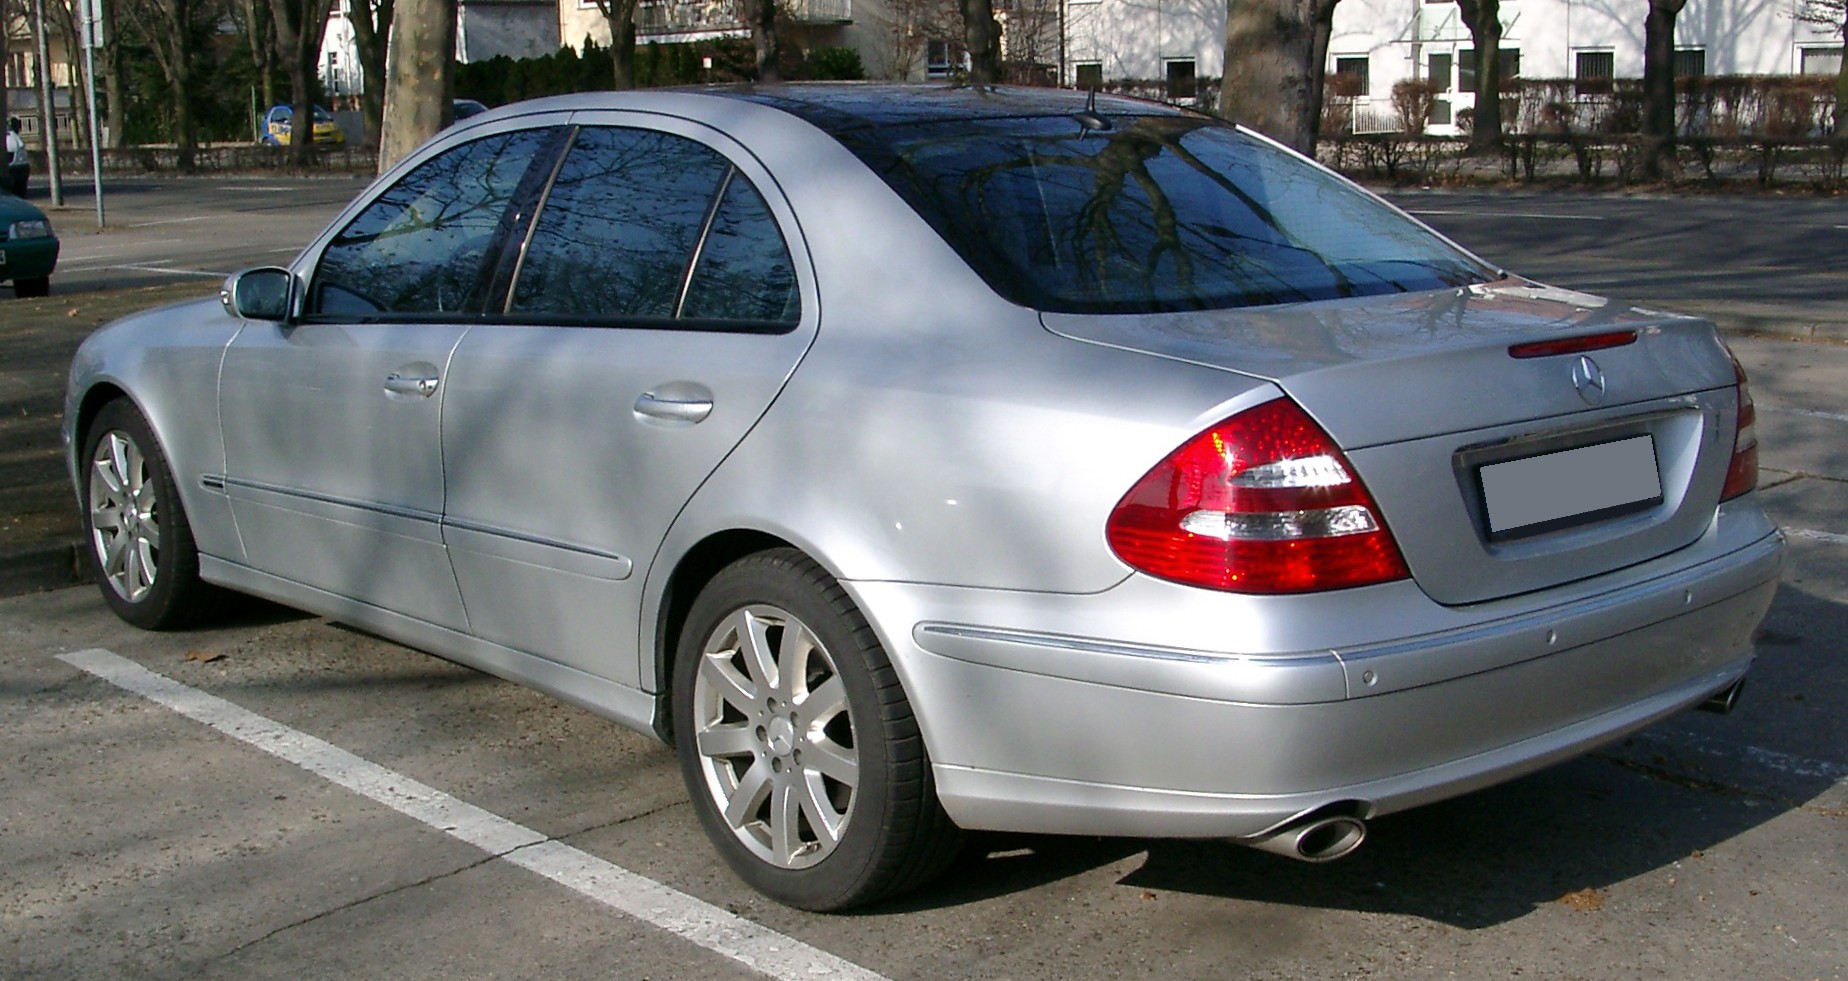 File:Mercedes W211 rear 20080213.jpg - Wikimedia Commons